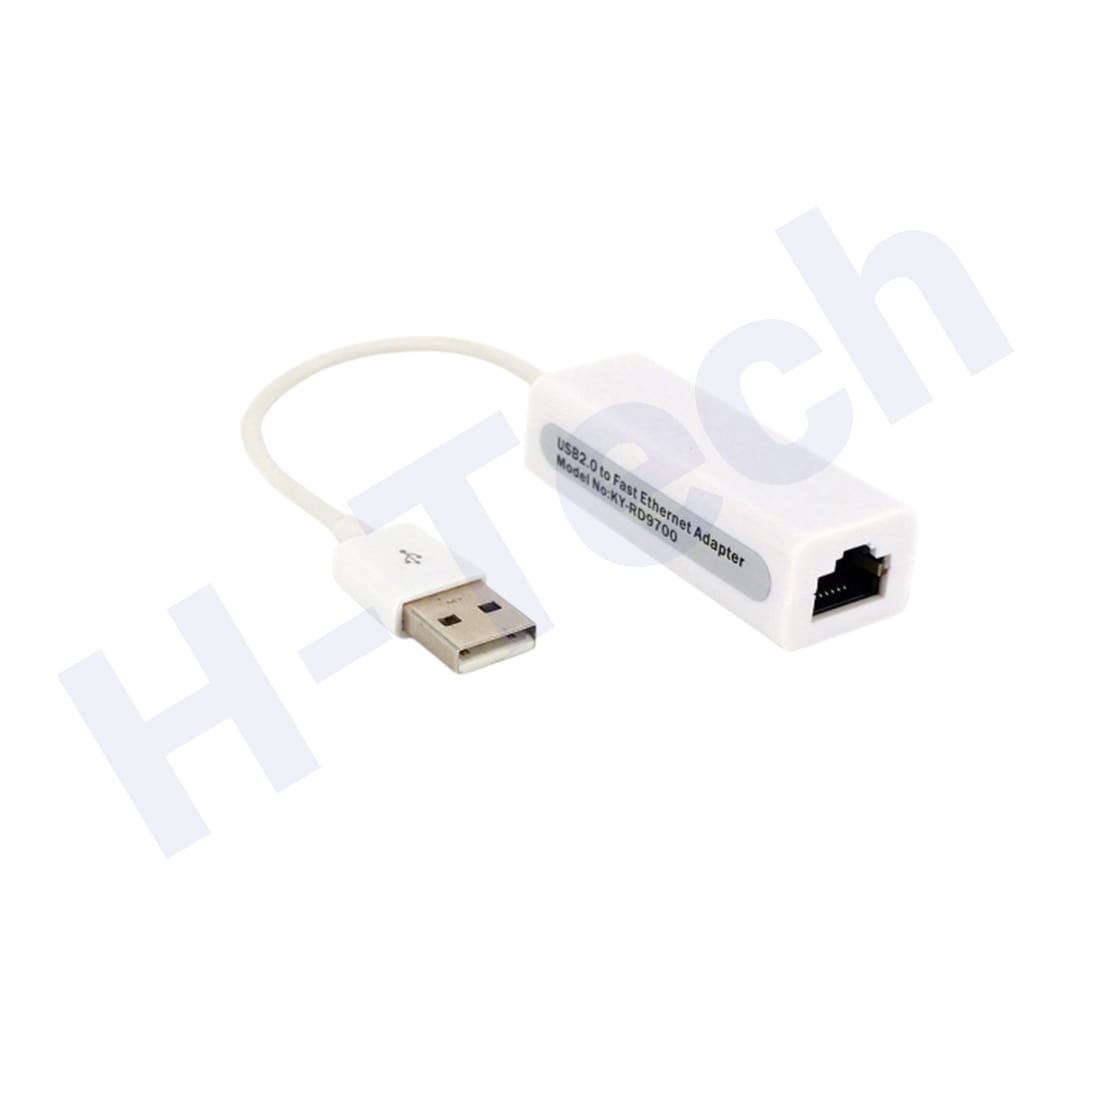 TIGER LAN USB K9 PLUS N°9700